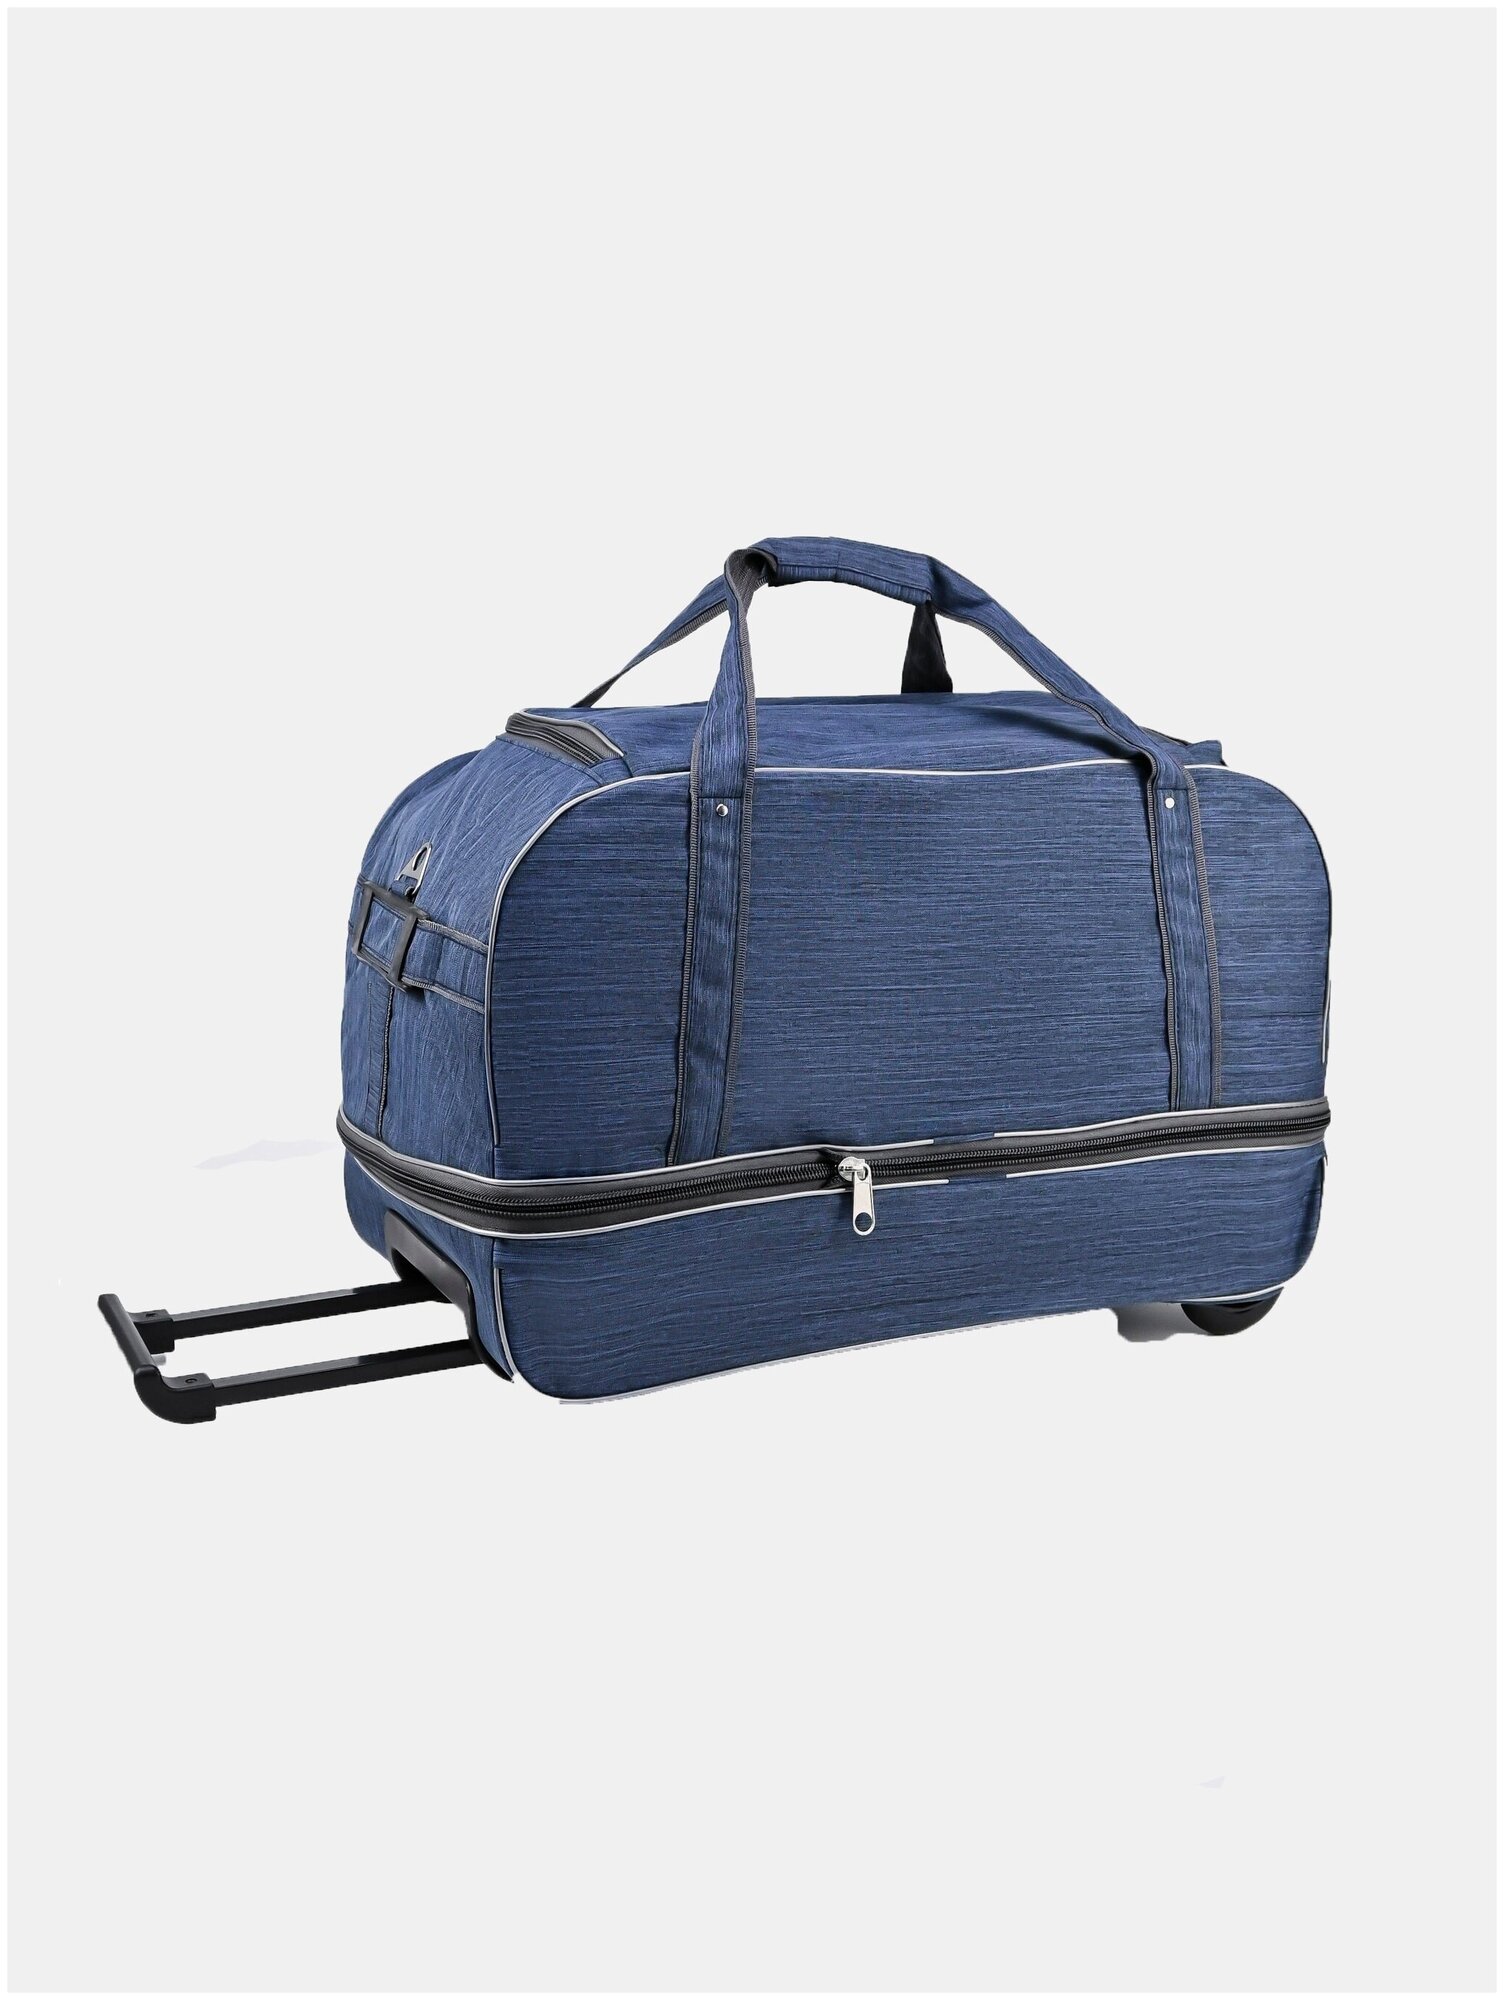 Дорожная сумка на колесах c раздвижкой, чемодан тележка для путешествий, мужская женская - фотография № 6